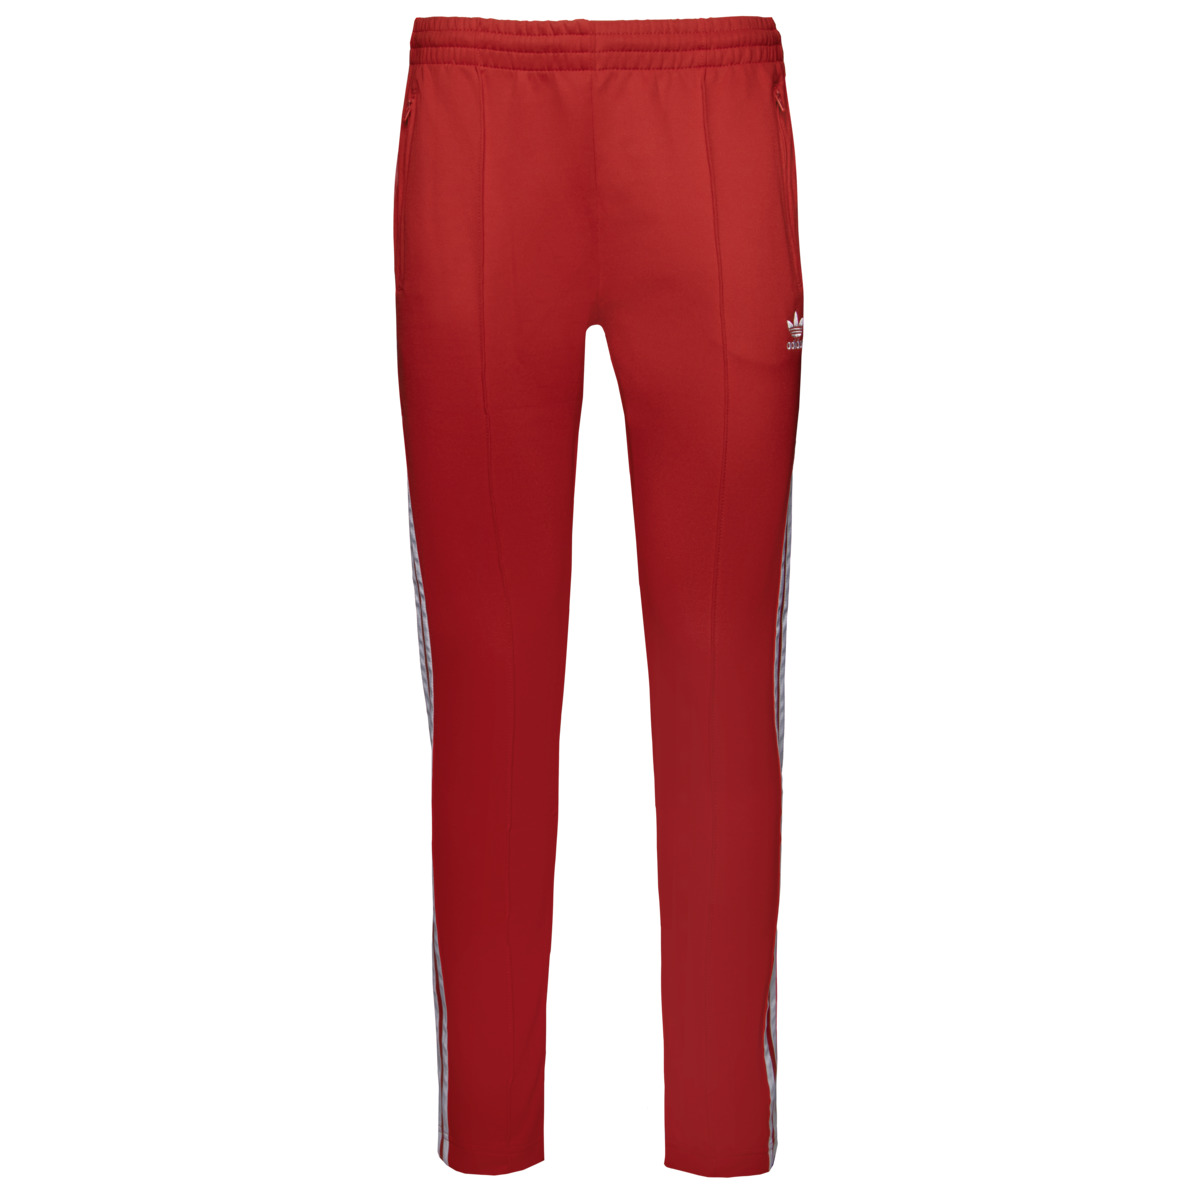 Спортивные брюки Adidas originals Primeblue SST, красный брюки adidas originals primeblue sst track pants карманы размер 38 розовый